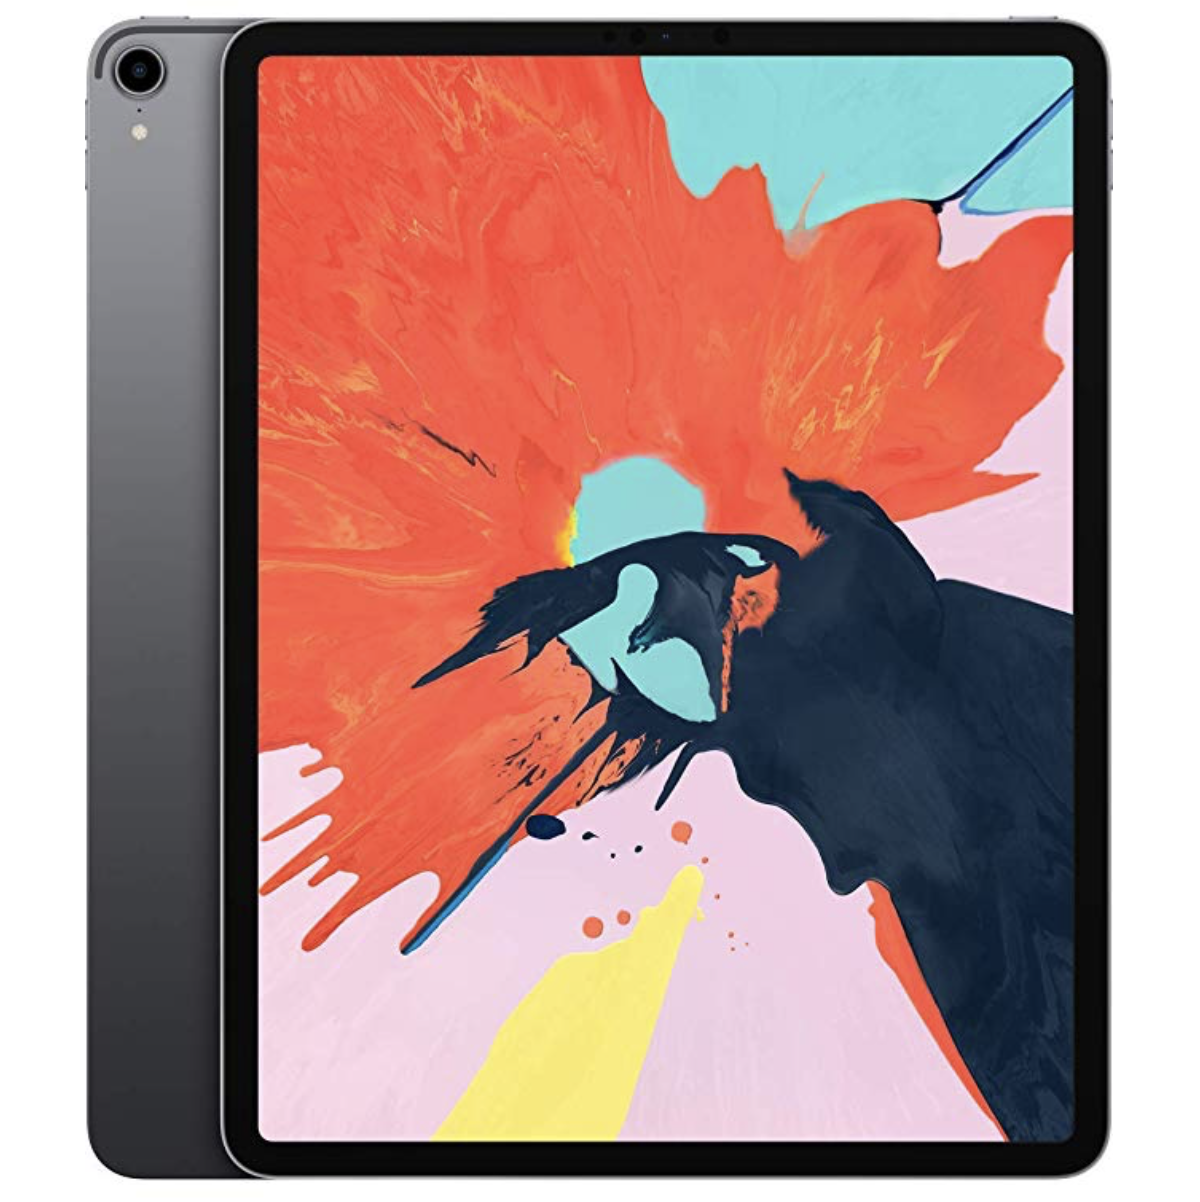 Apple iPad Pro (12.9-inch, Wi-Fi, 512GB) - Space Gray